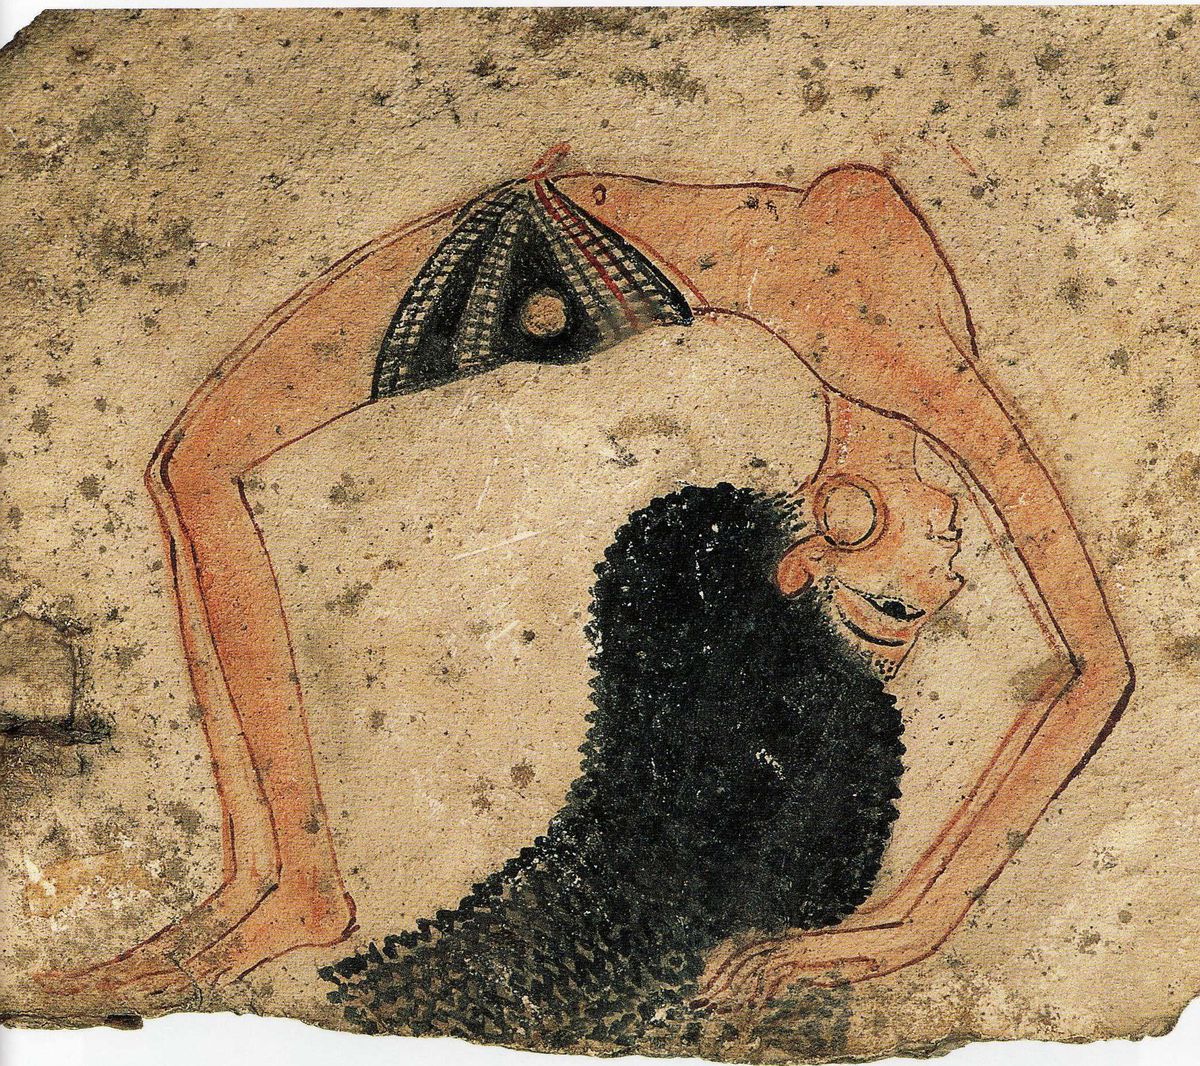 Seks w cieniu piramid. Prostytucja w starożytnym Egipcie